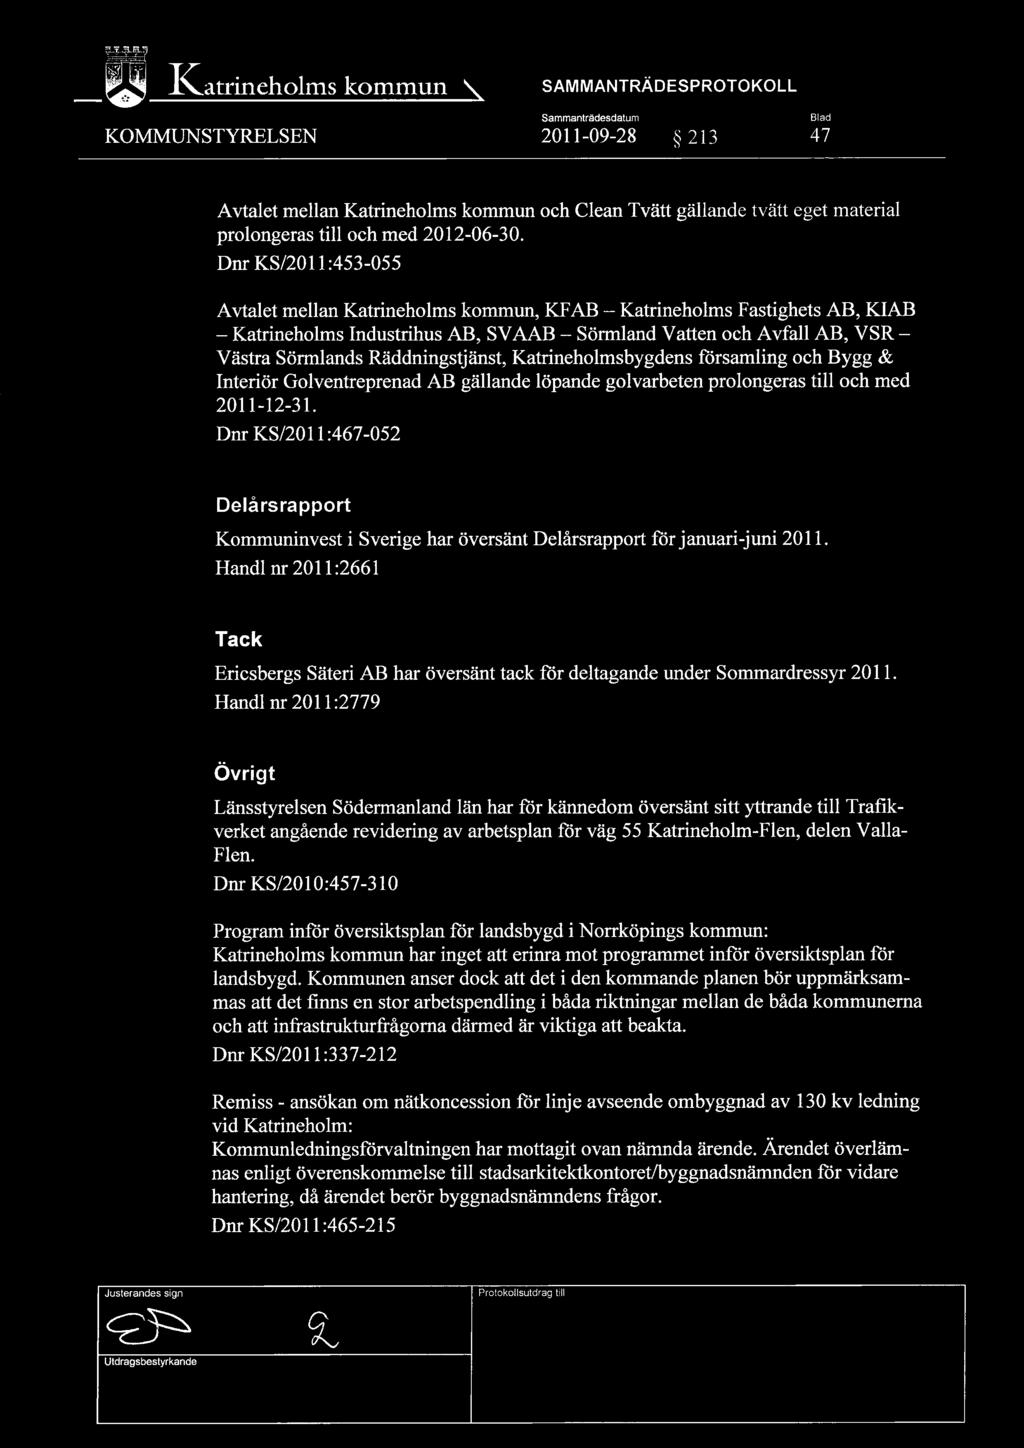 Dnr KS/2011:453-055 Avtalet mellan Katrineholms kommun, KFAB Katrineholms Fastighets AB, KIAB Katrineholms Industrihus AB, SVAAB Sörmland Vatten och Avfall AB, VSR Västra Sörmlands Räddningstjänst,